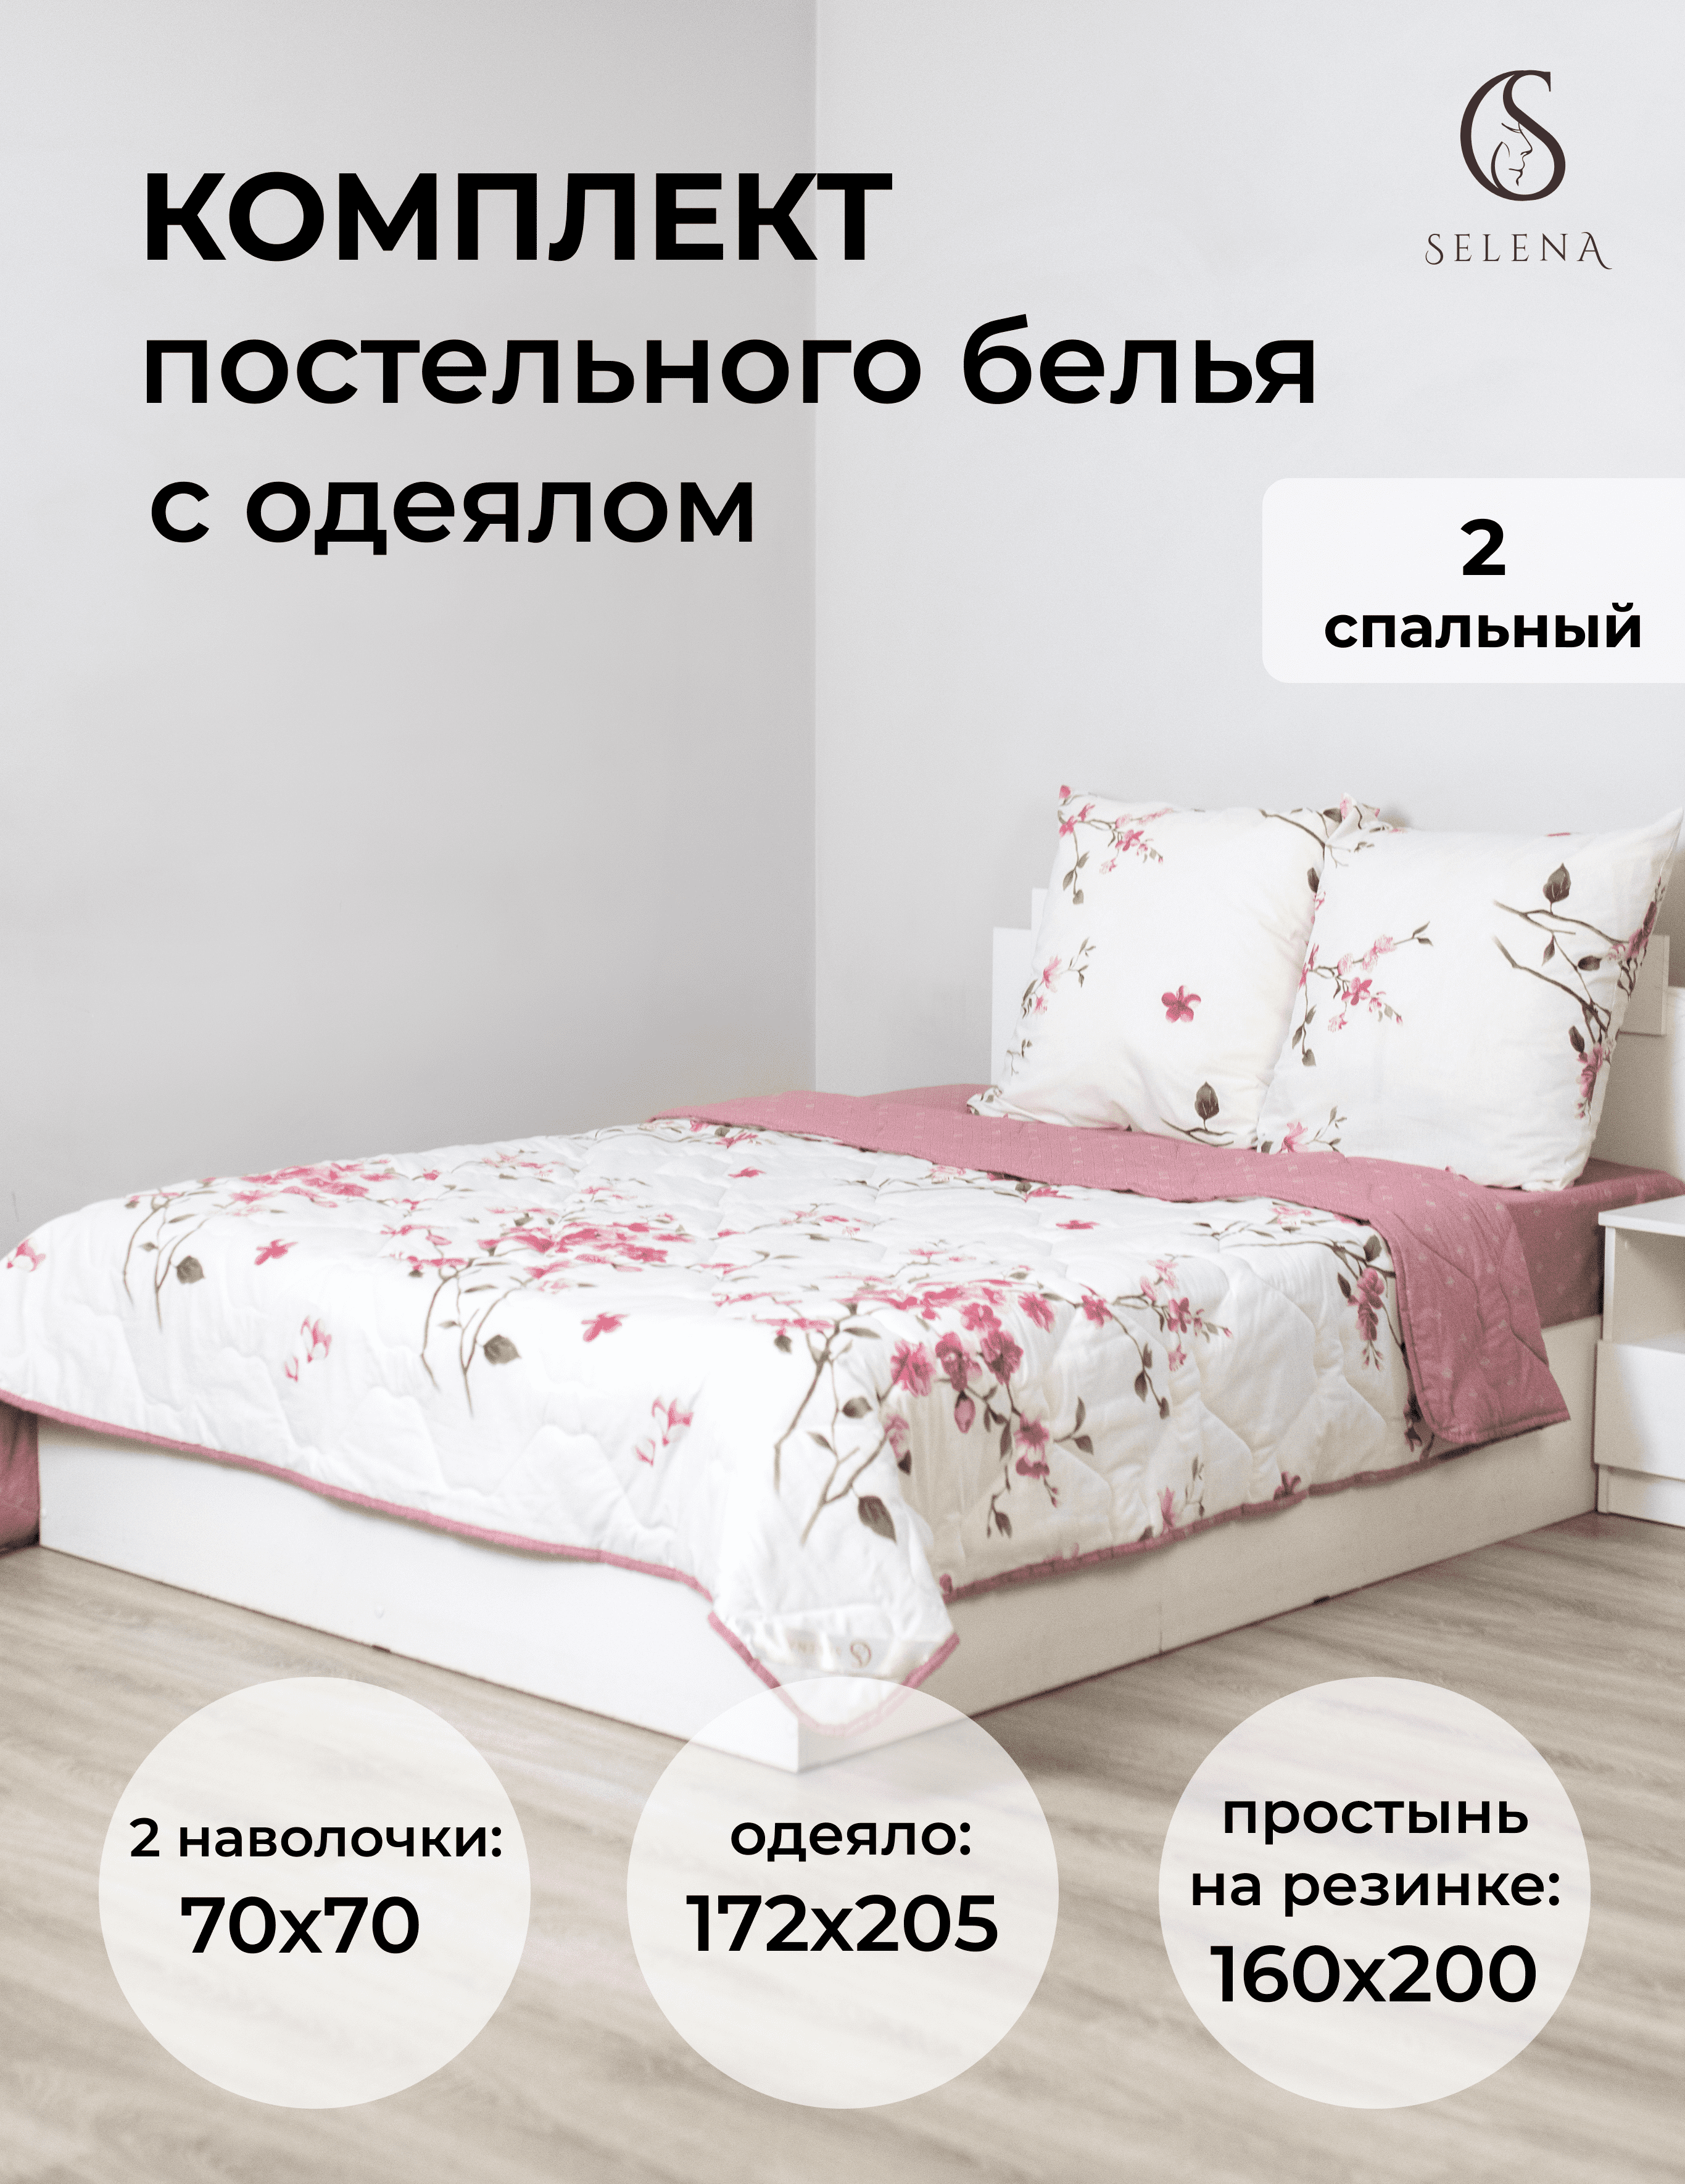 Комплект постельного белья SELENA с одеялом и простыней на резинке 2 спальный